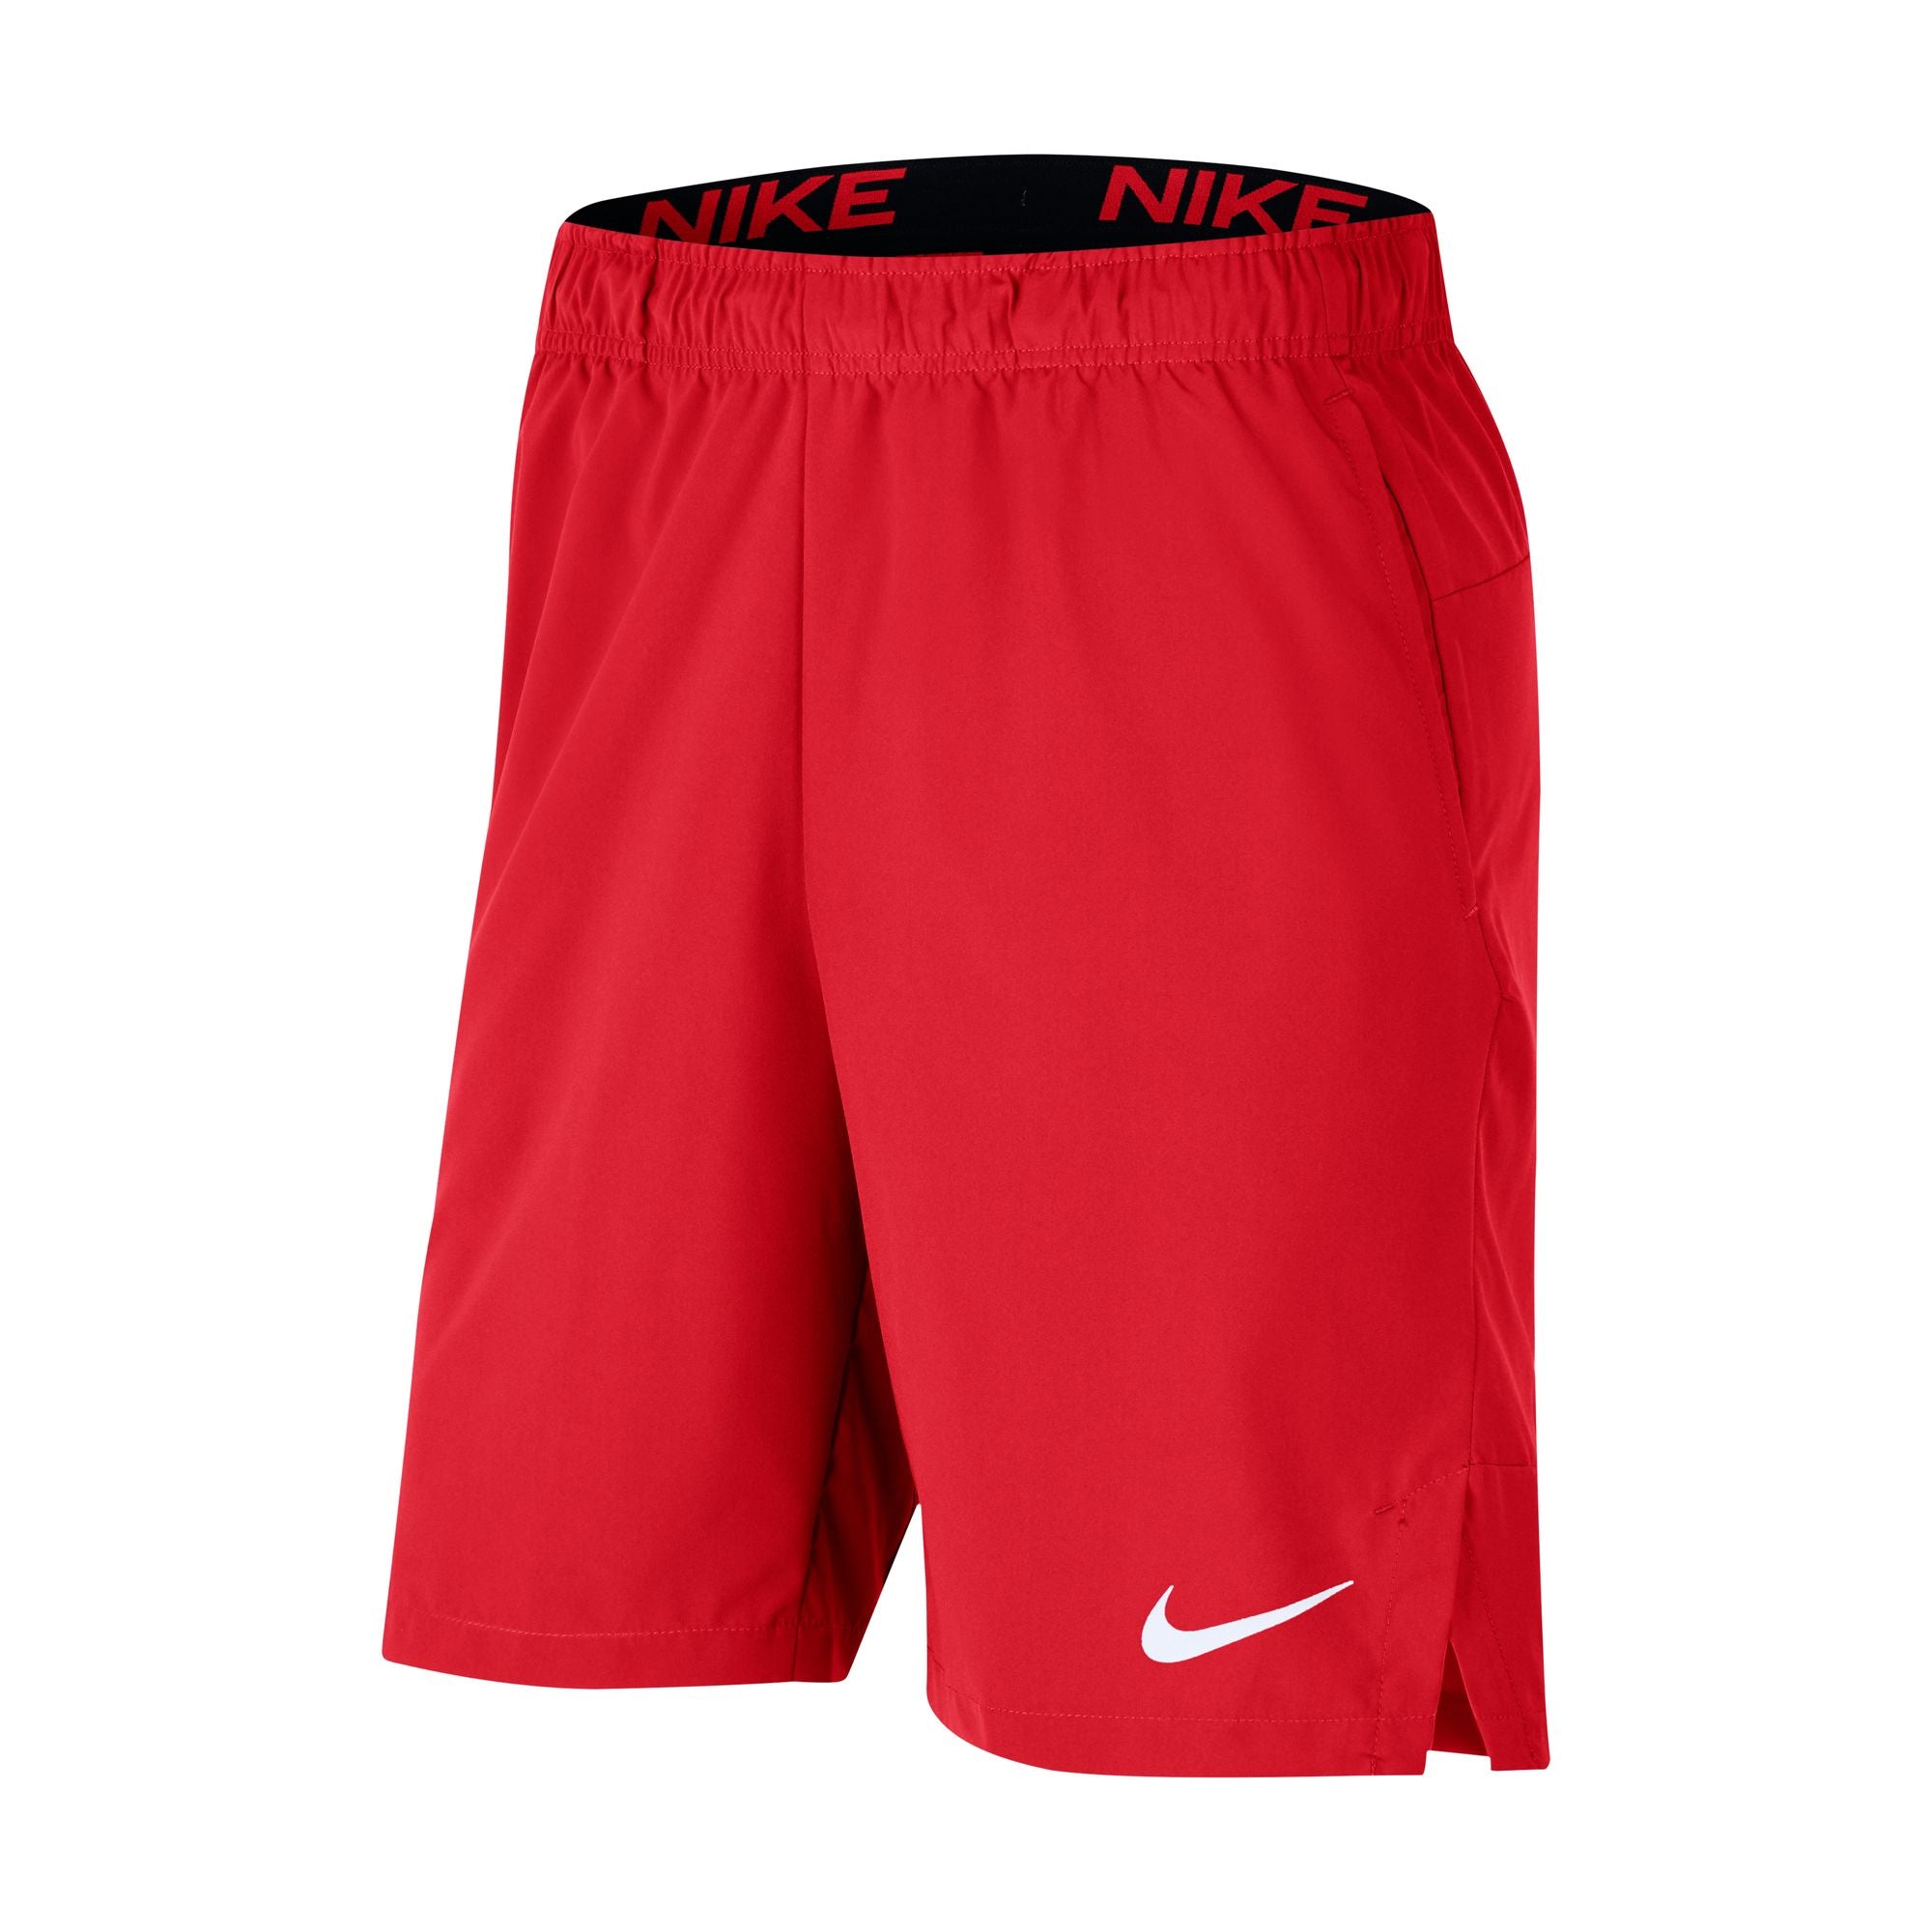 Nike Dri-FIT Flex Men's Woven Training Shorts